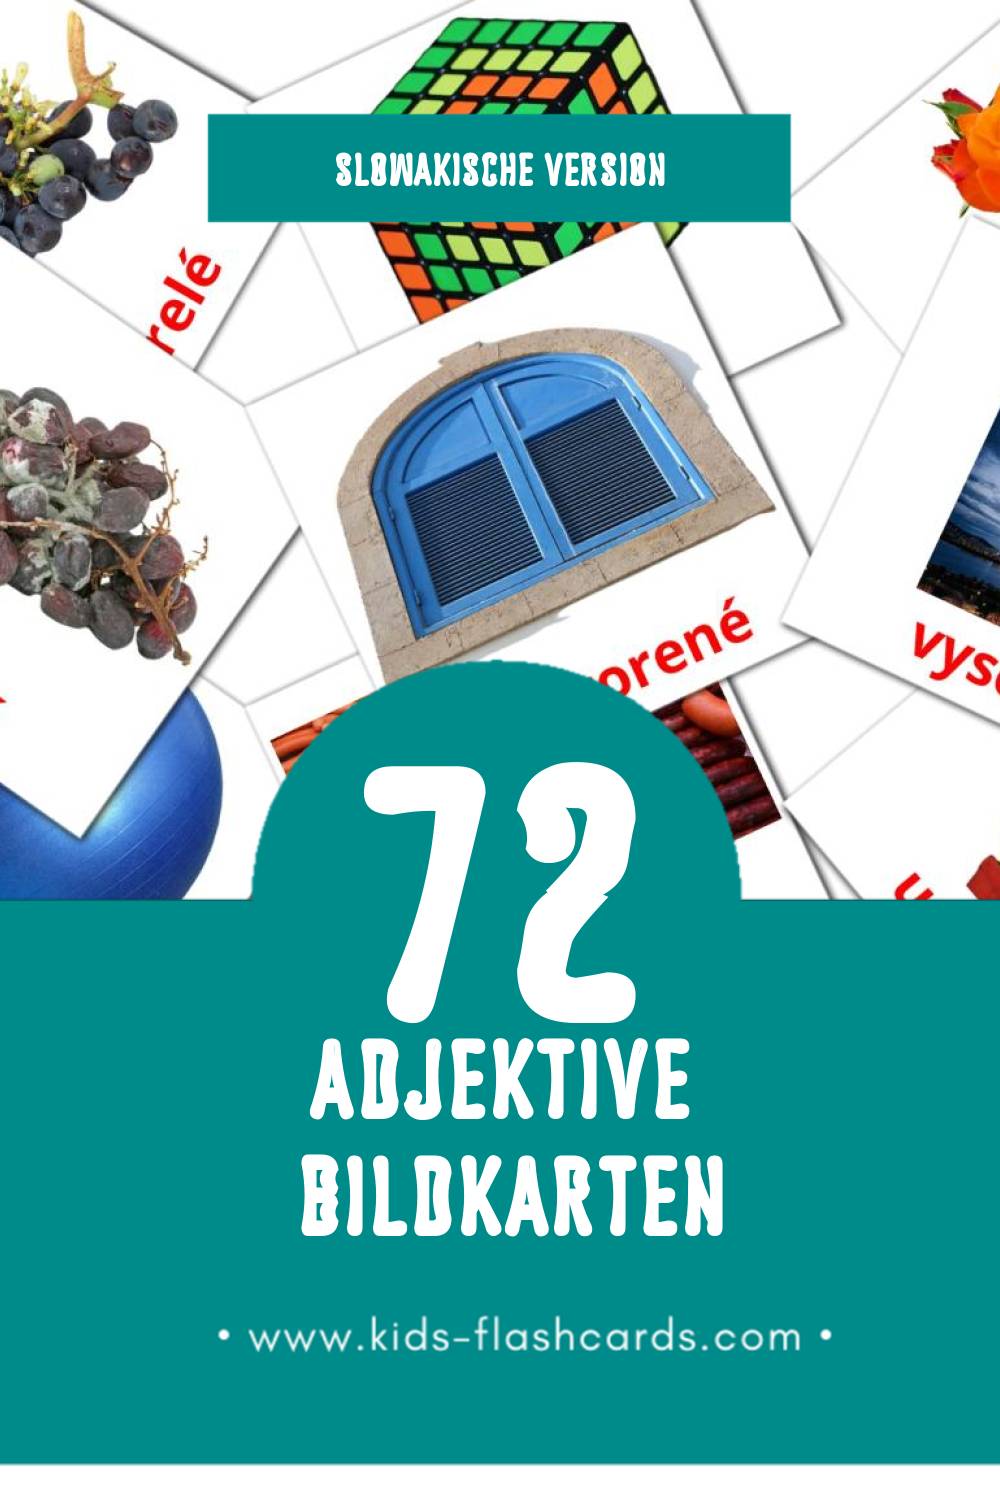 Visual Prídavné mená Flashcards für Kleinkinder (72 Karten in Slowakisch)